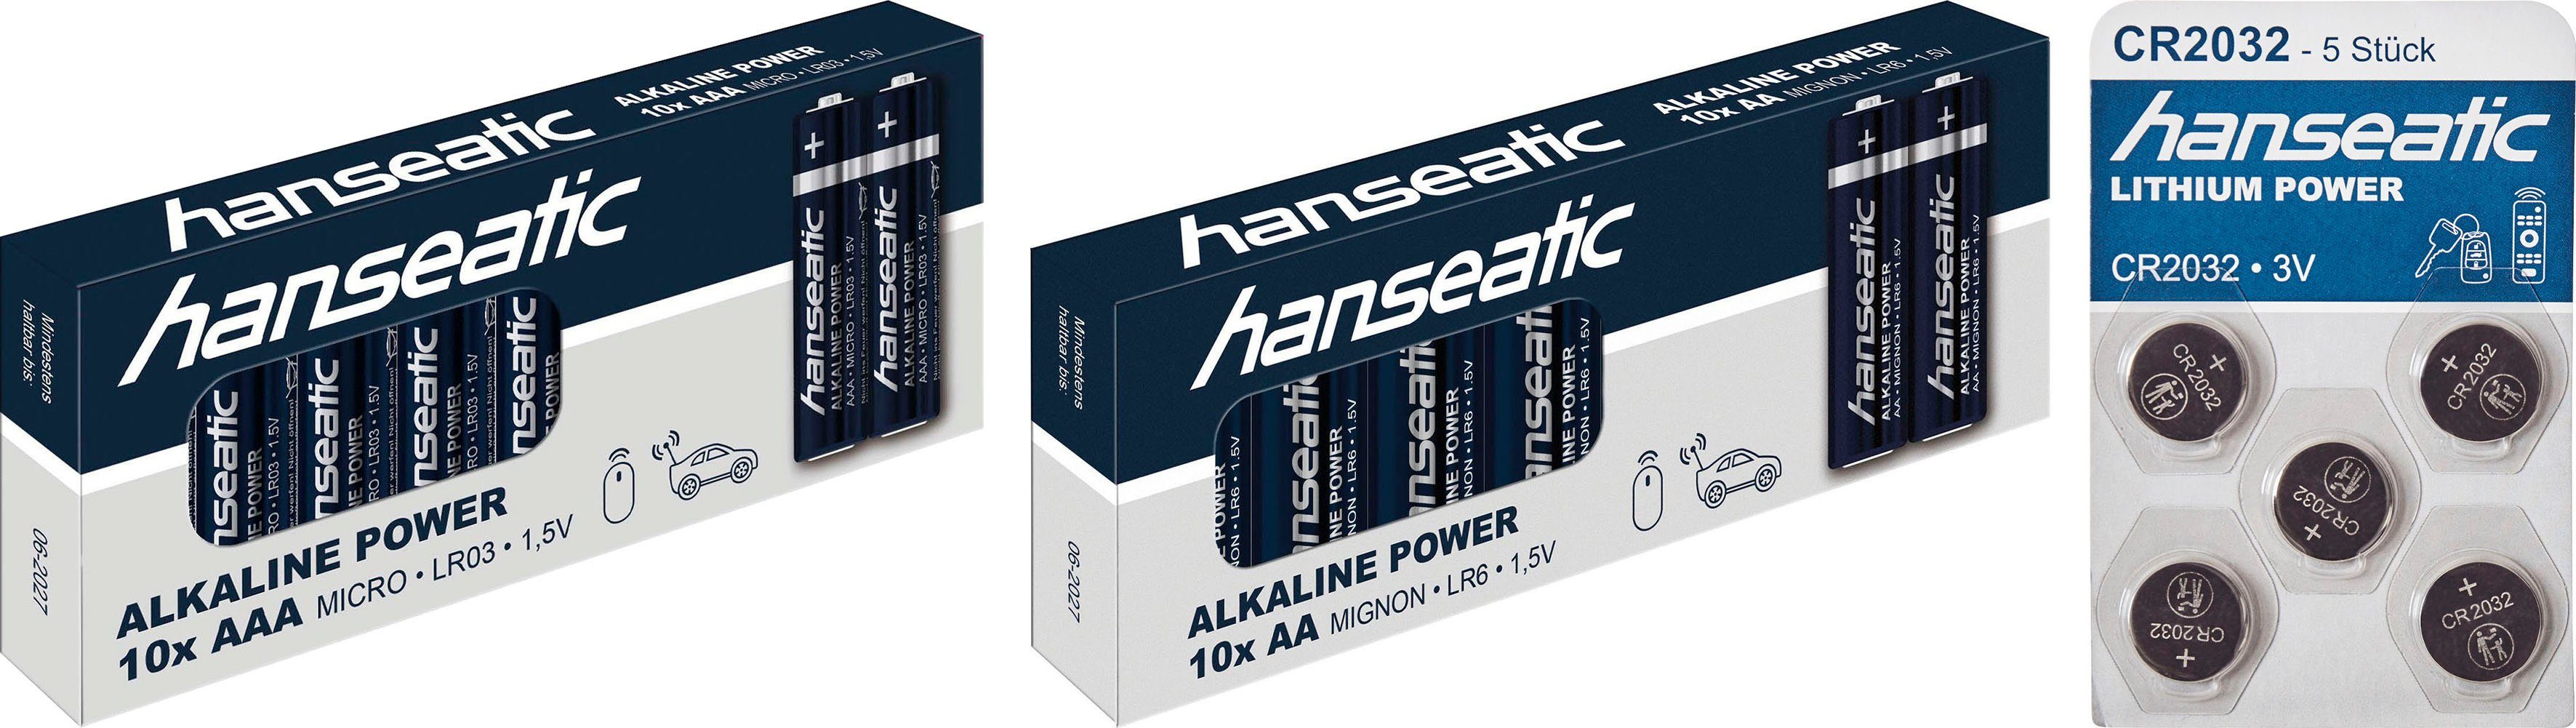 10x Batterie CR + Hanseatic Stück + 5x Batterie, St), Set AAA 2032 10x 25 Mix (25 AA